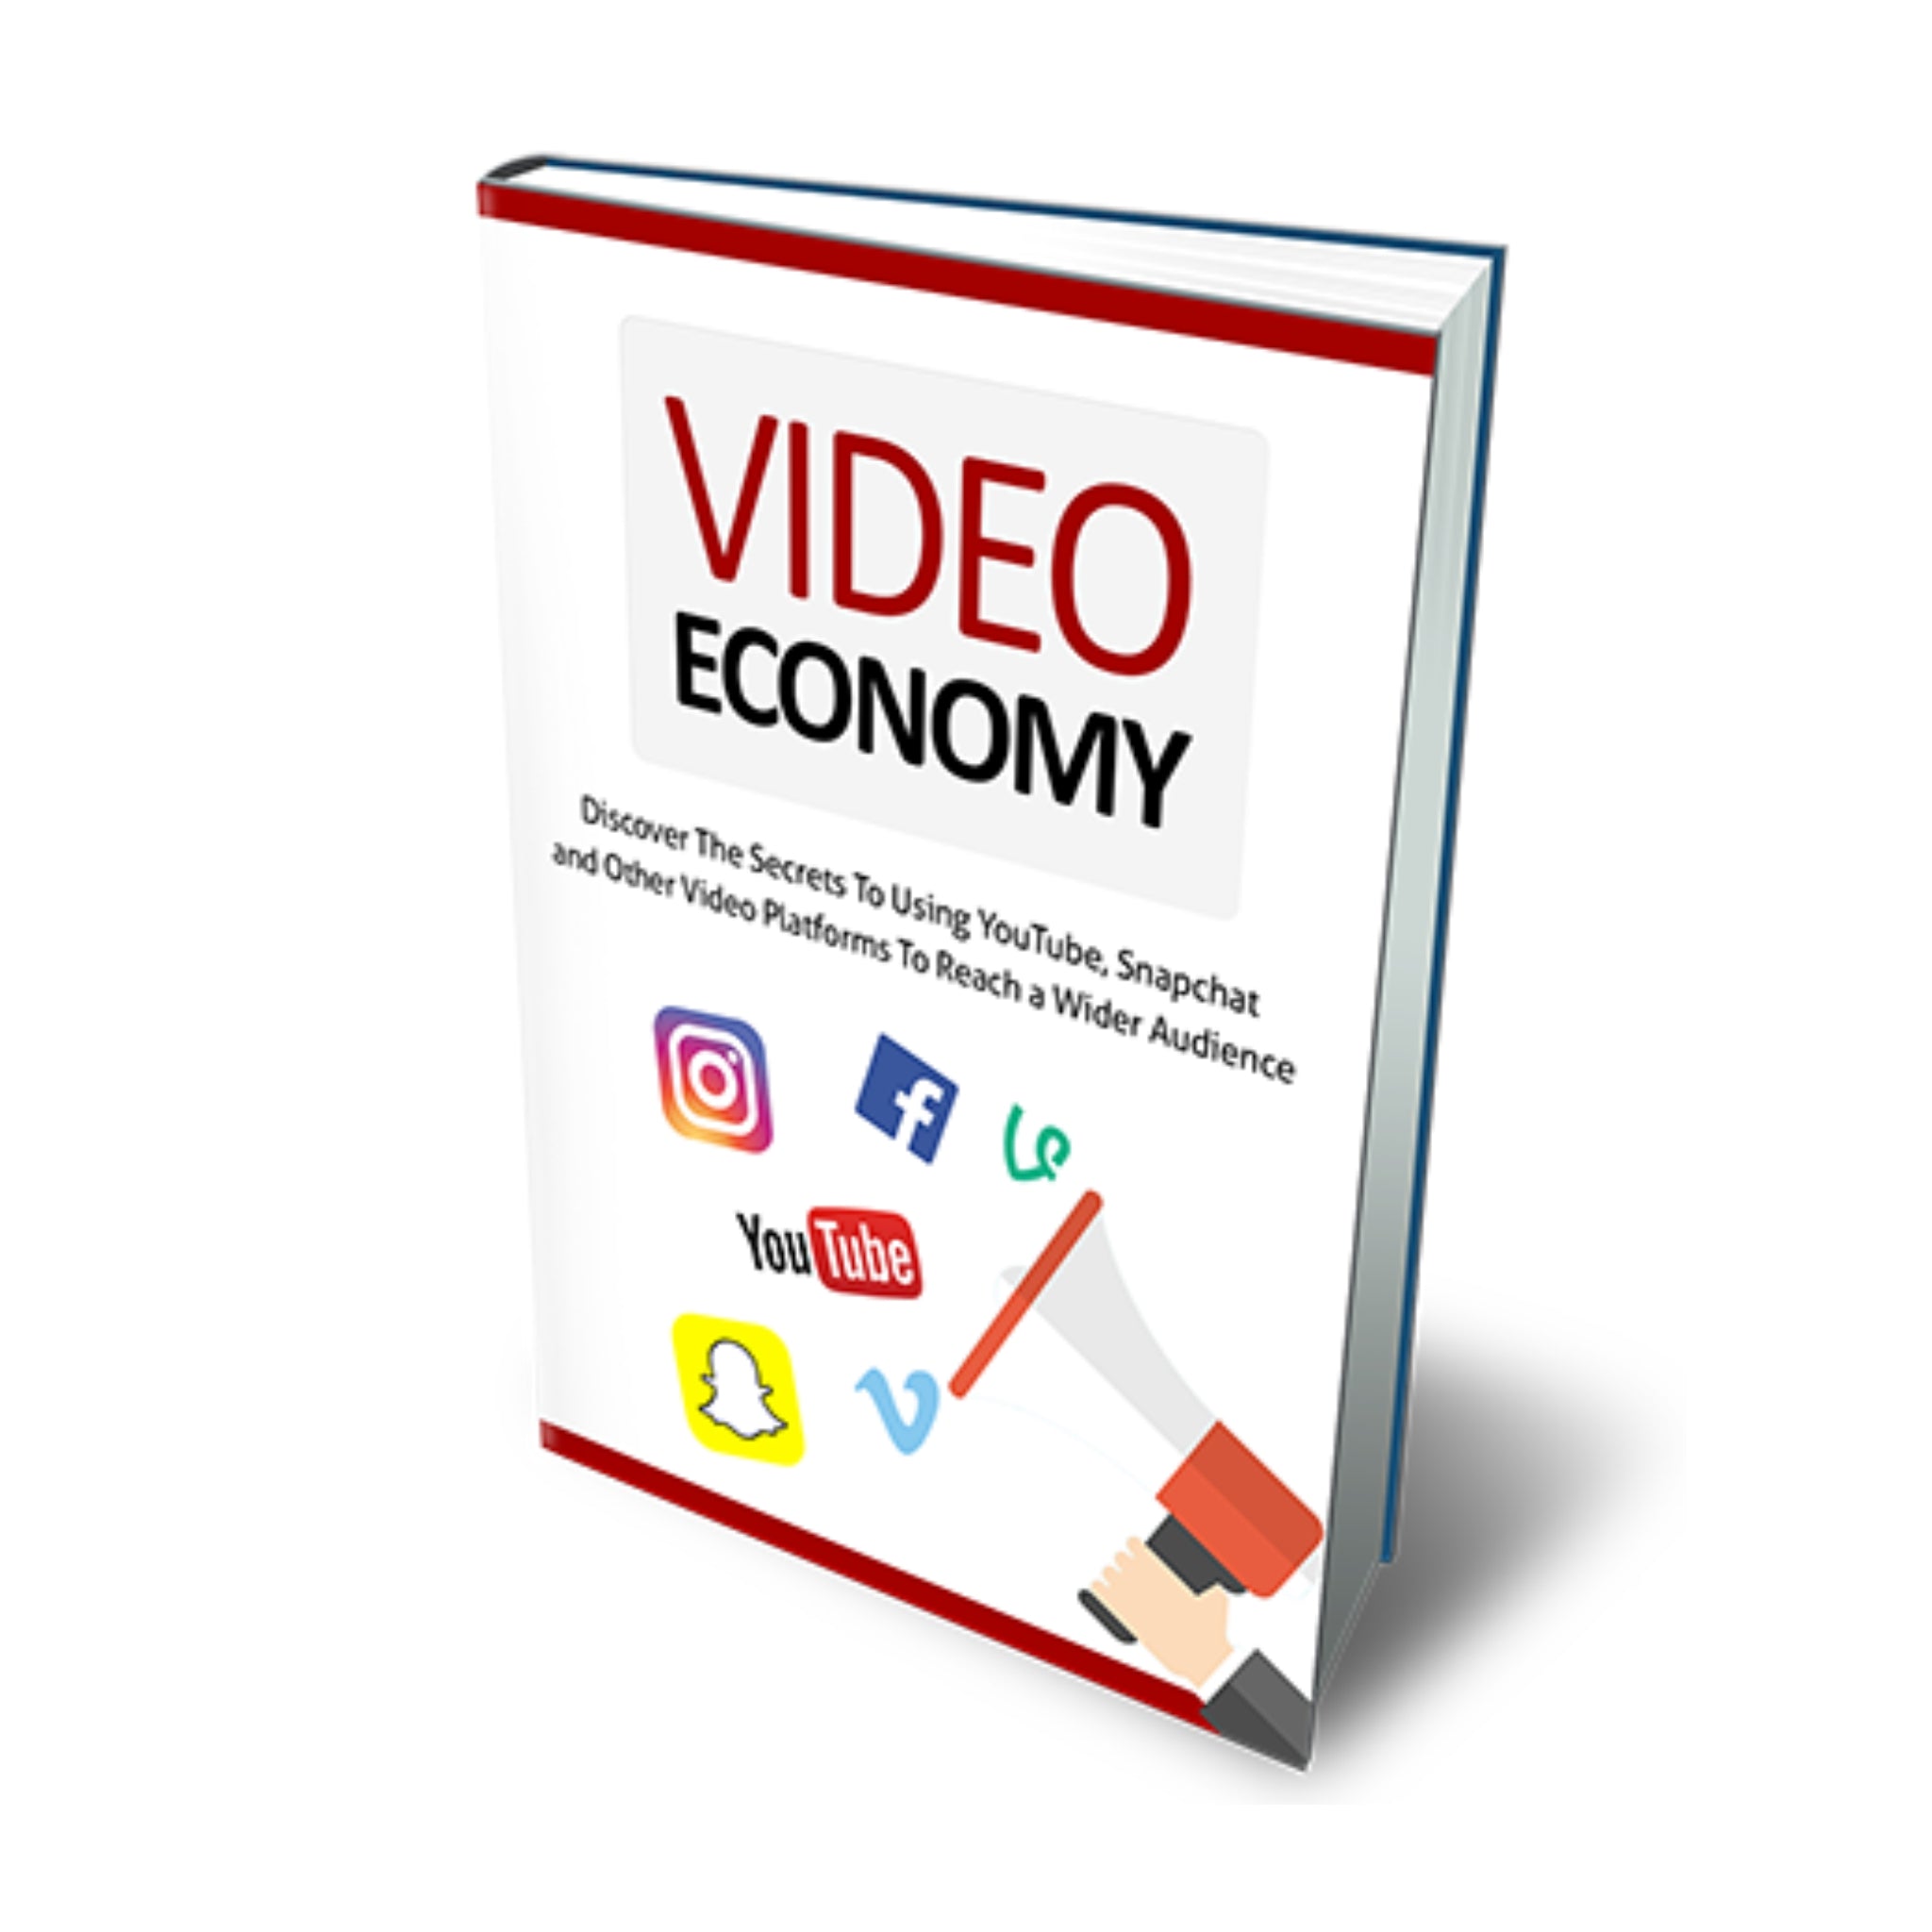 Video Economy Ebook